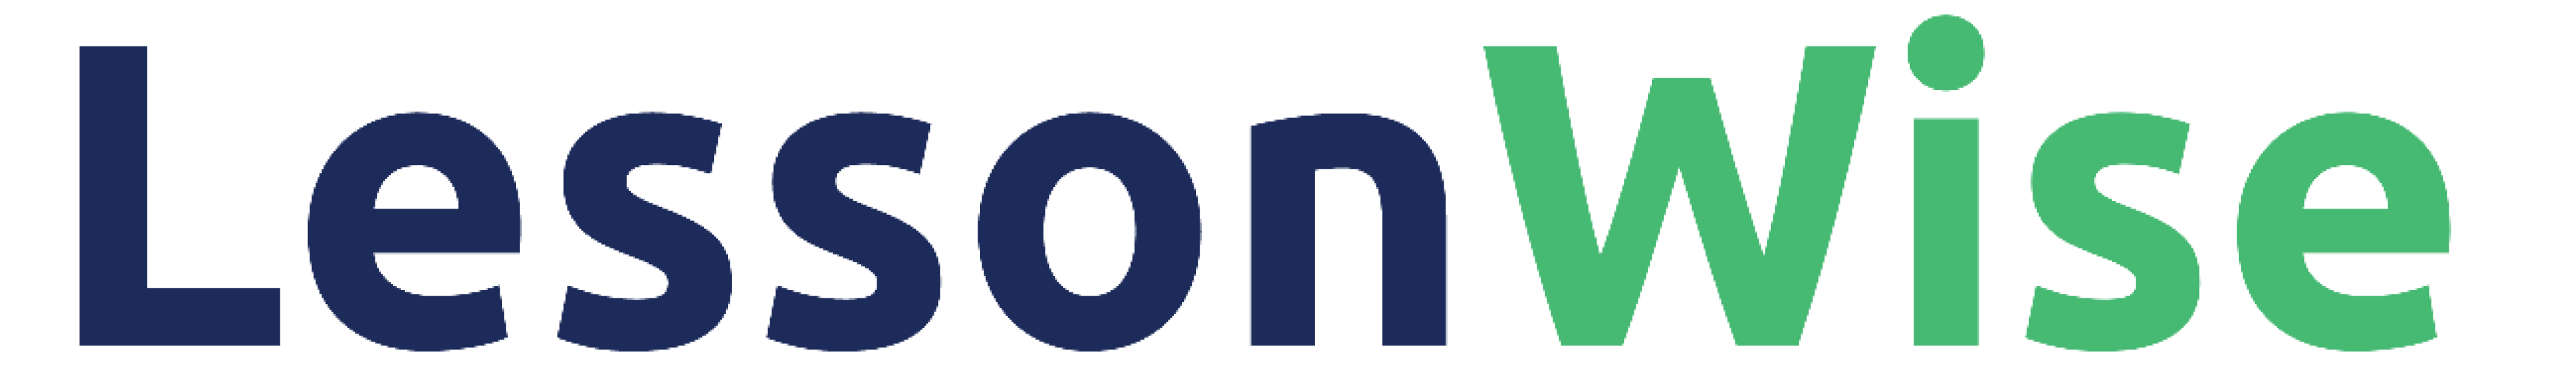 LessonWise logo